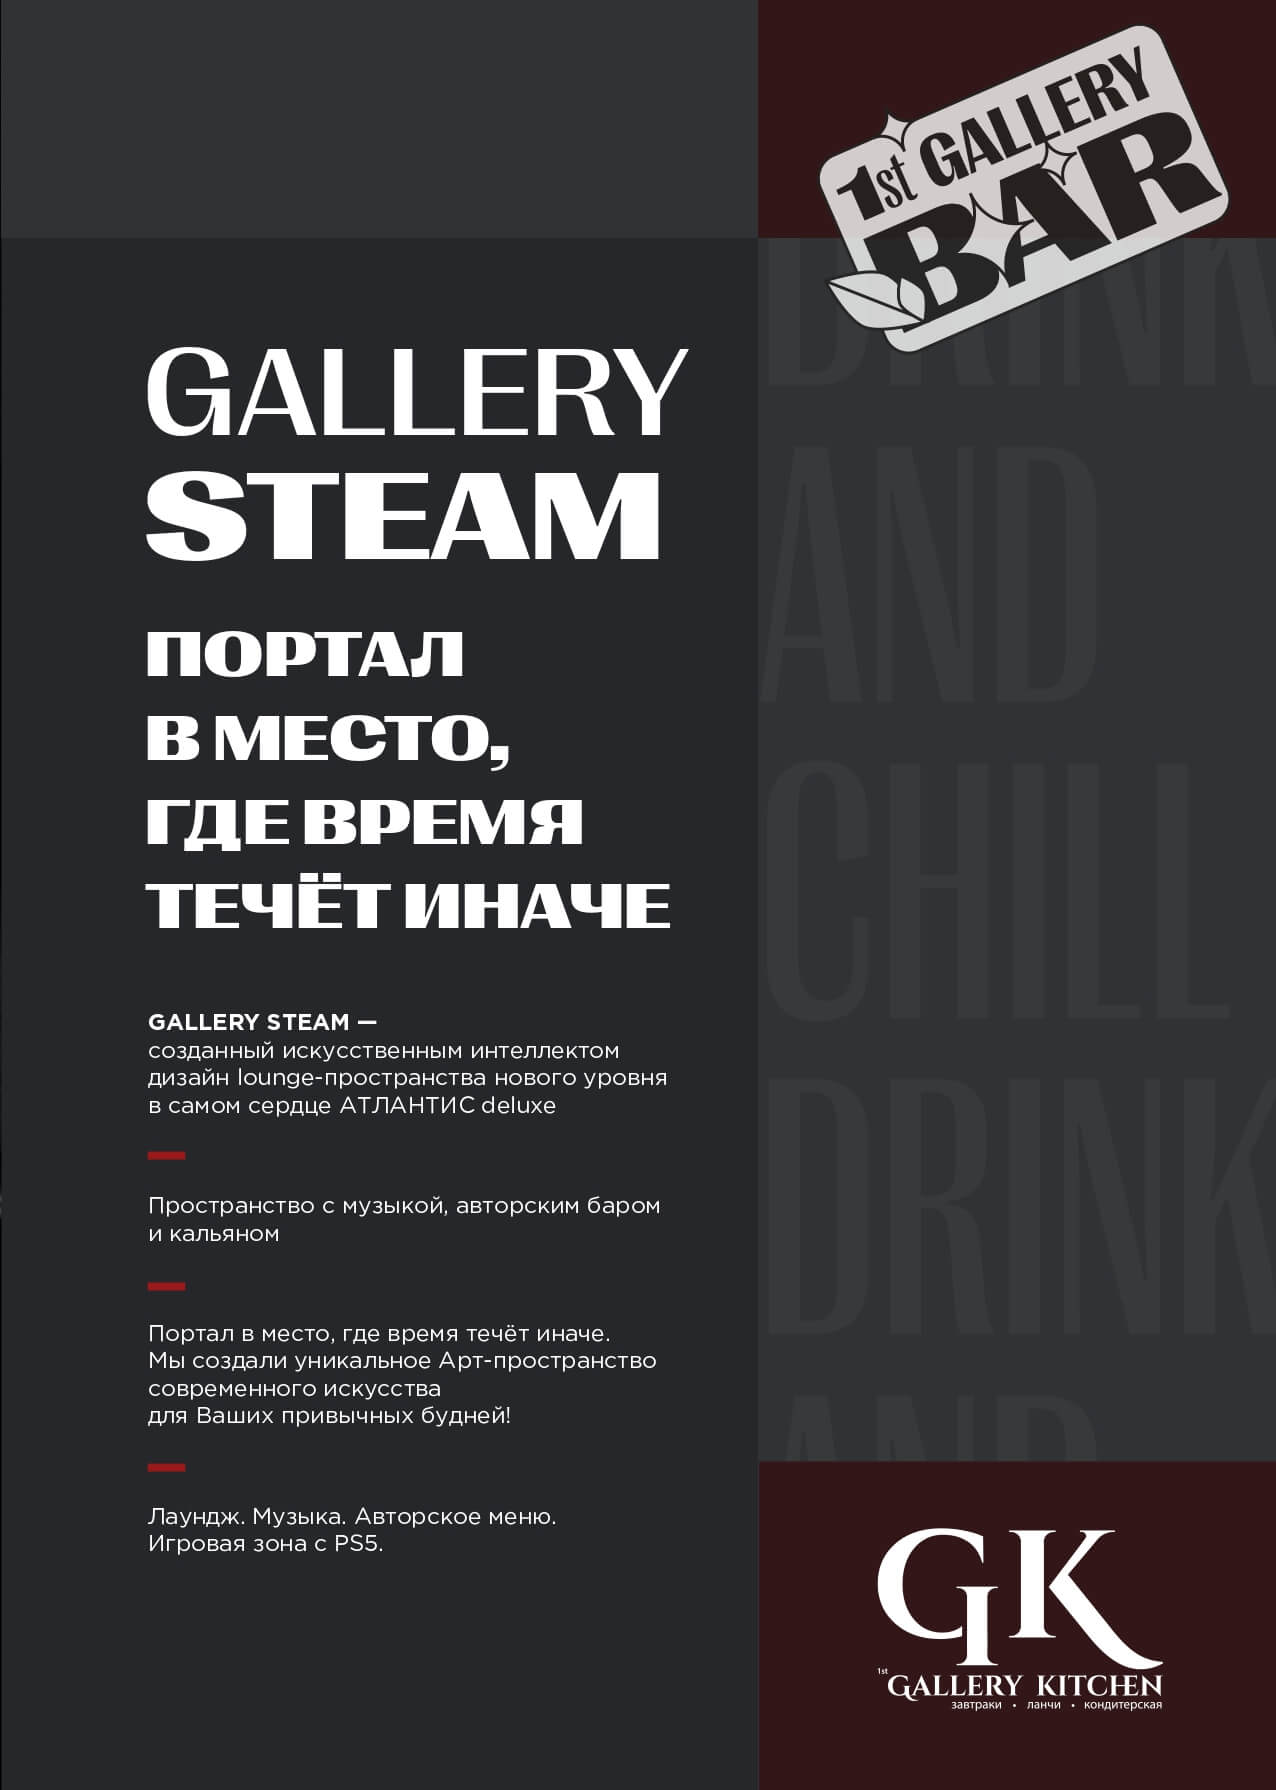 Карта бара Steam - gallery steam bar pechat page 0003 - Ресторан 1st GALLERY KITCHEN